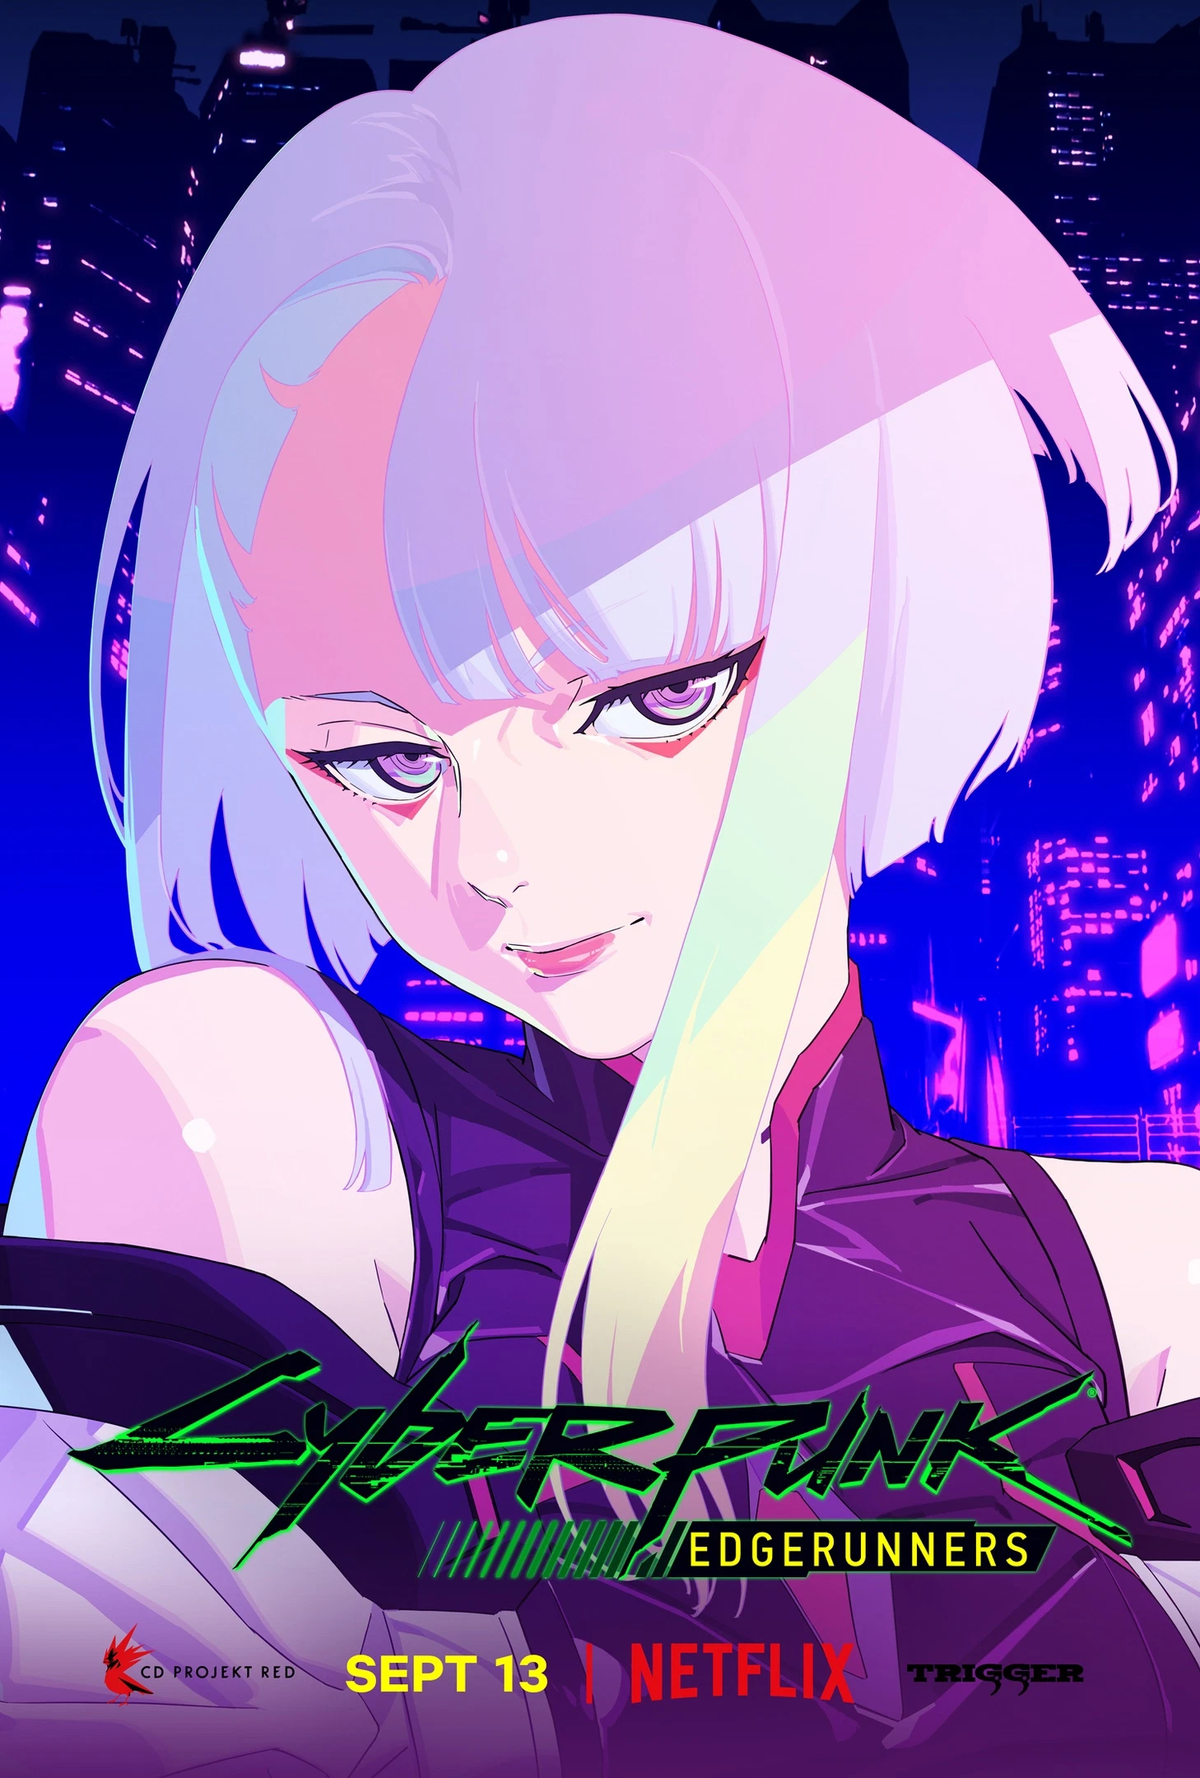 Новый постер к аниме «Cyberpunk: Edgerunners». 